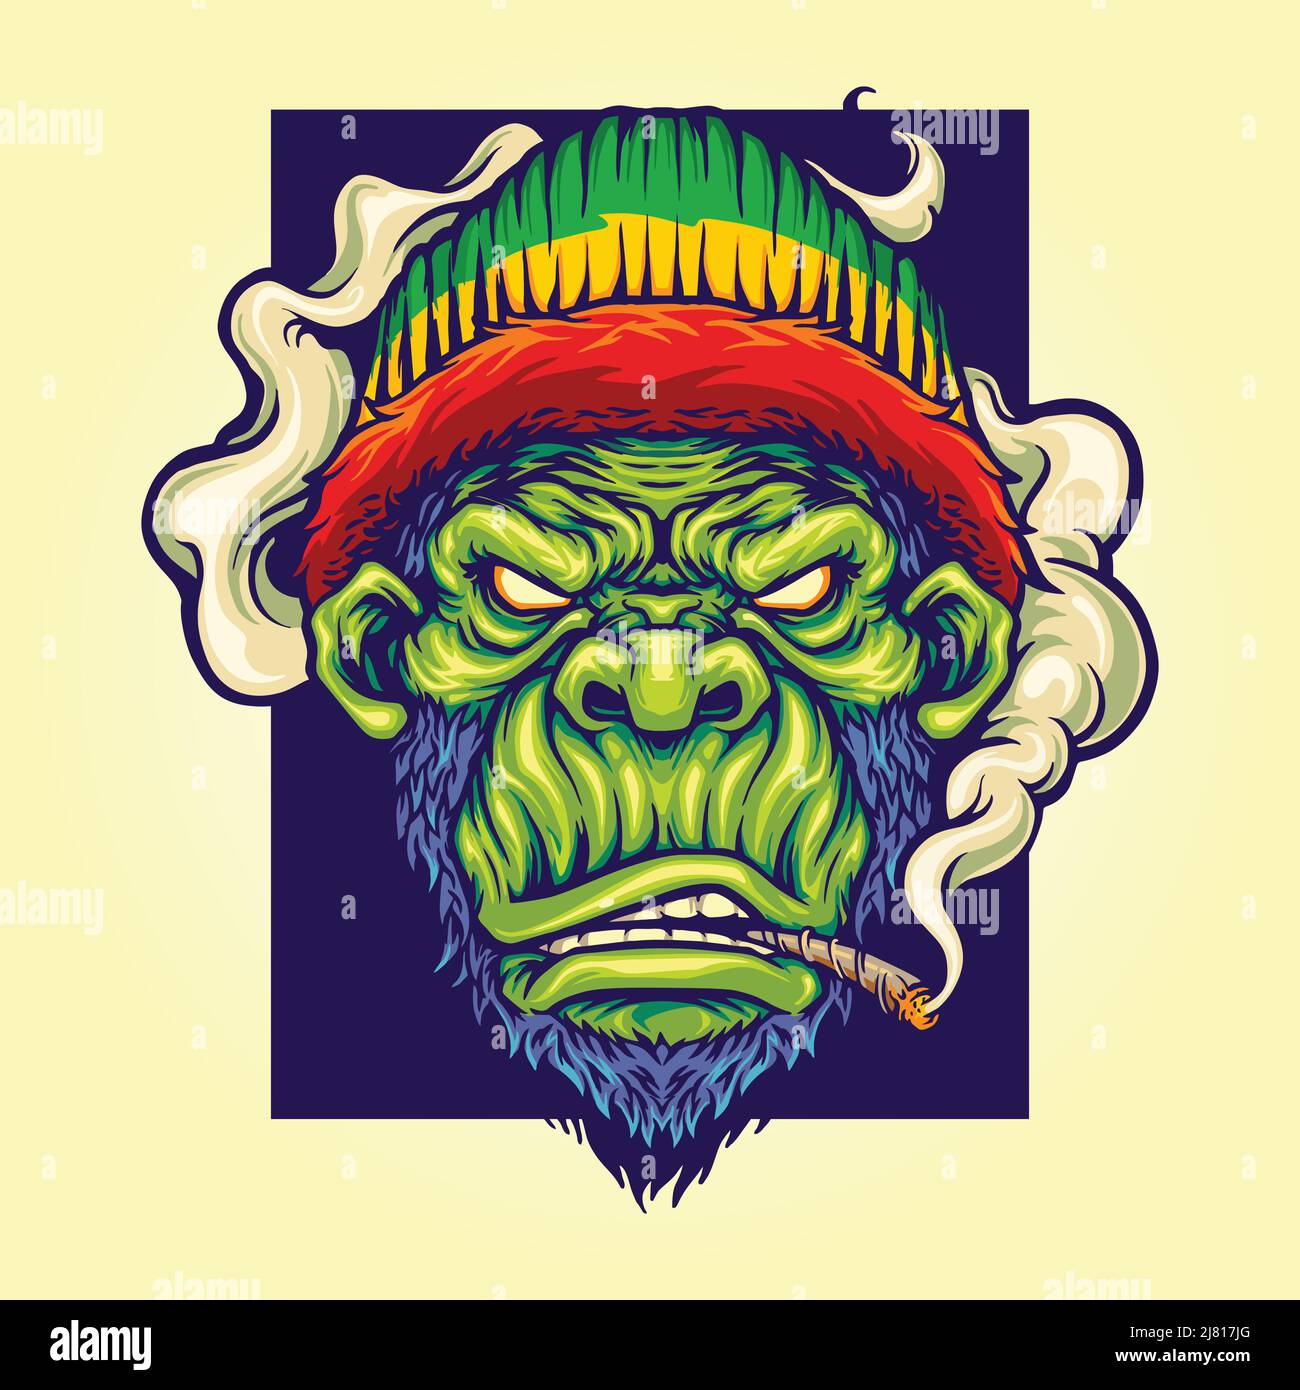 Gorilla rastafarian mit Cannabis-Vektor-Illustrationen für deine Arbeit Logo, Merchandise-T-Shirt, Aufkleber und Label-Designs, Poster Stock Vektor